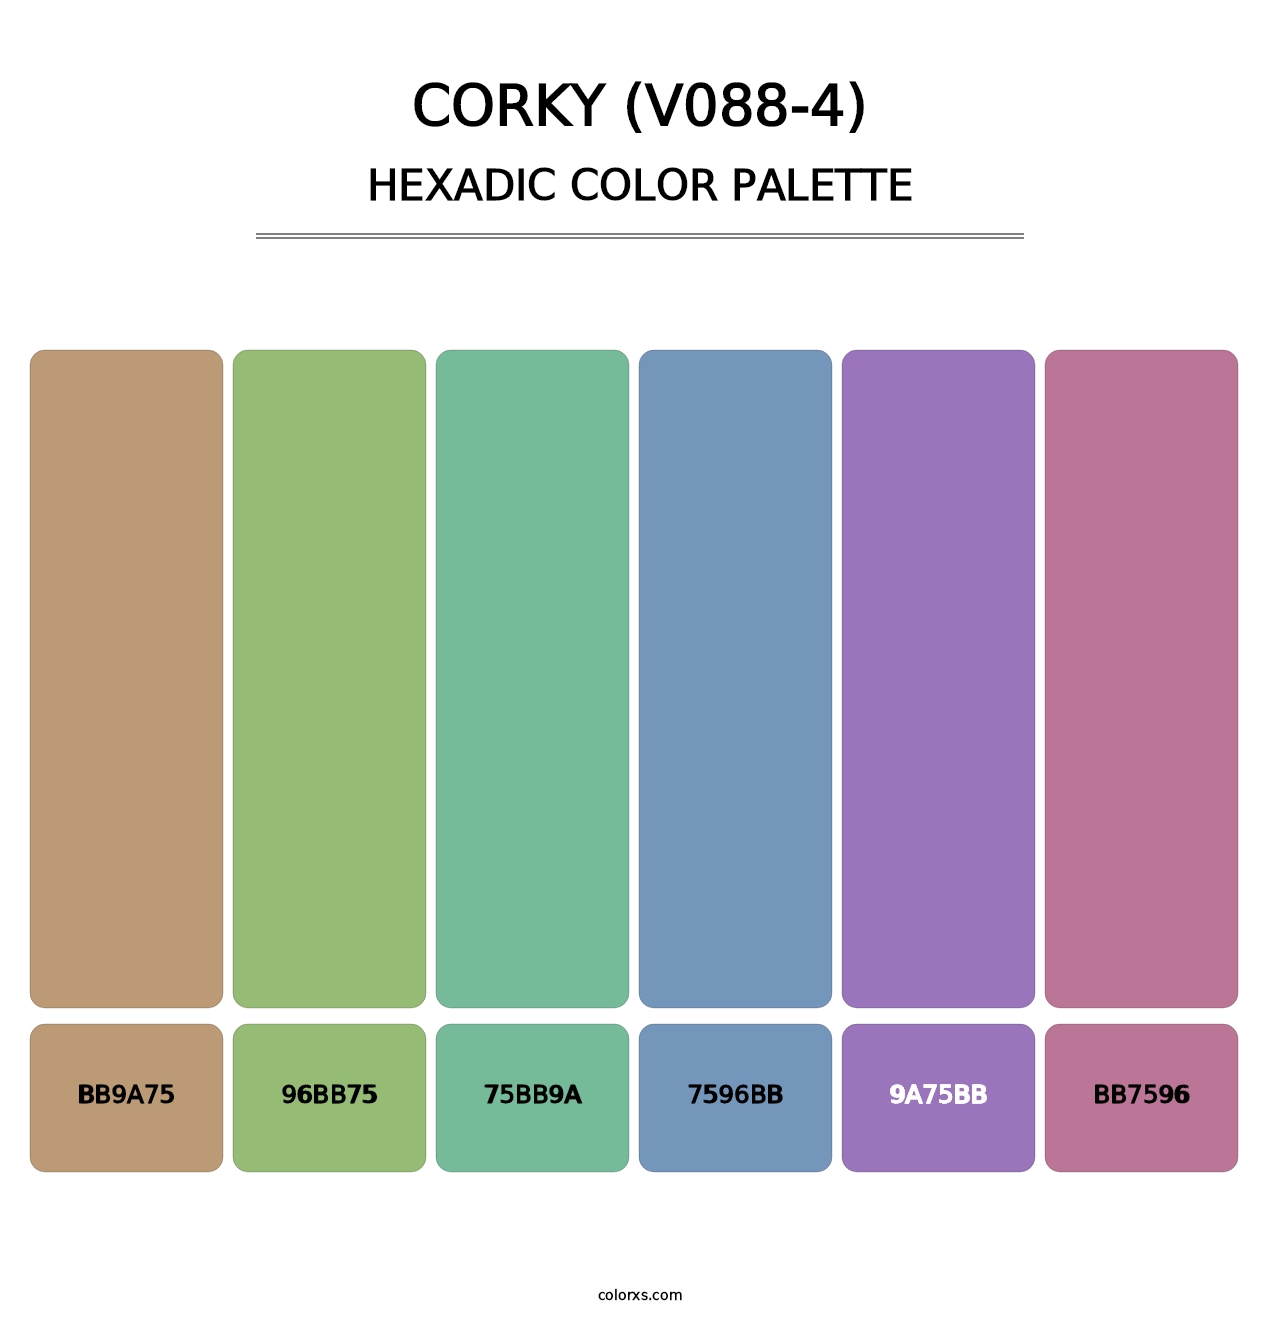 Corky (V088-4) - Hexadic Color Palette